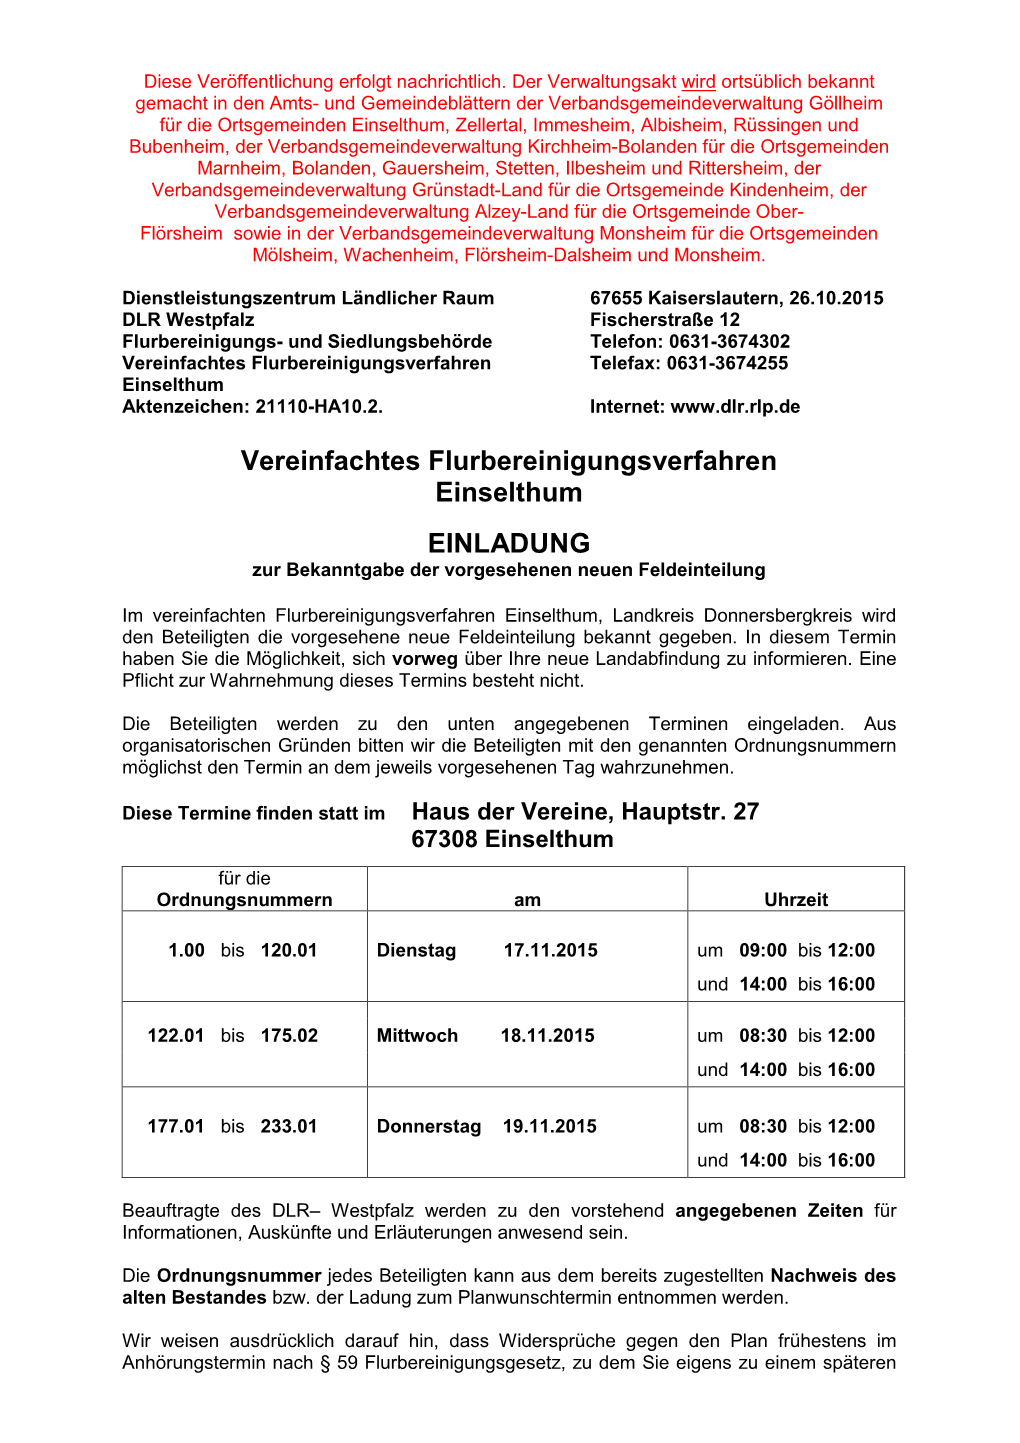 Vereinfachtes Flurbereinigungsverfahren Telefax: 0631-3674255 Einselthum Aktenzeichen: 21110-HA10.2